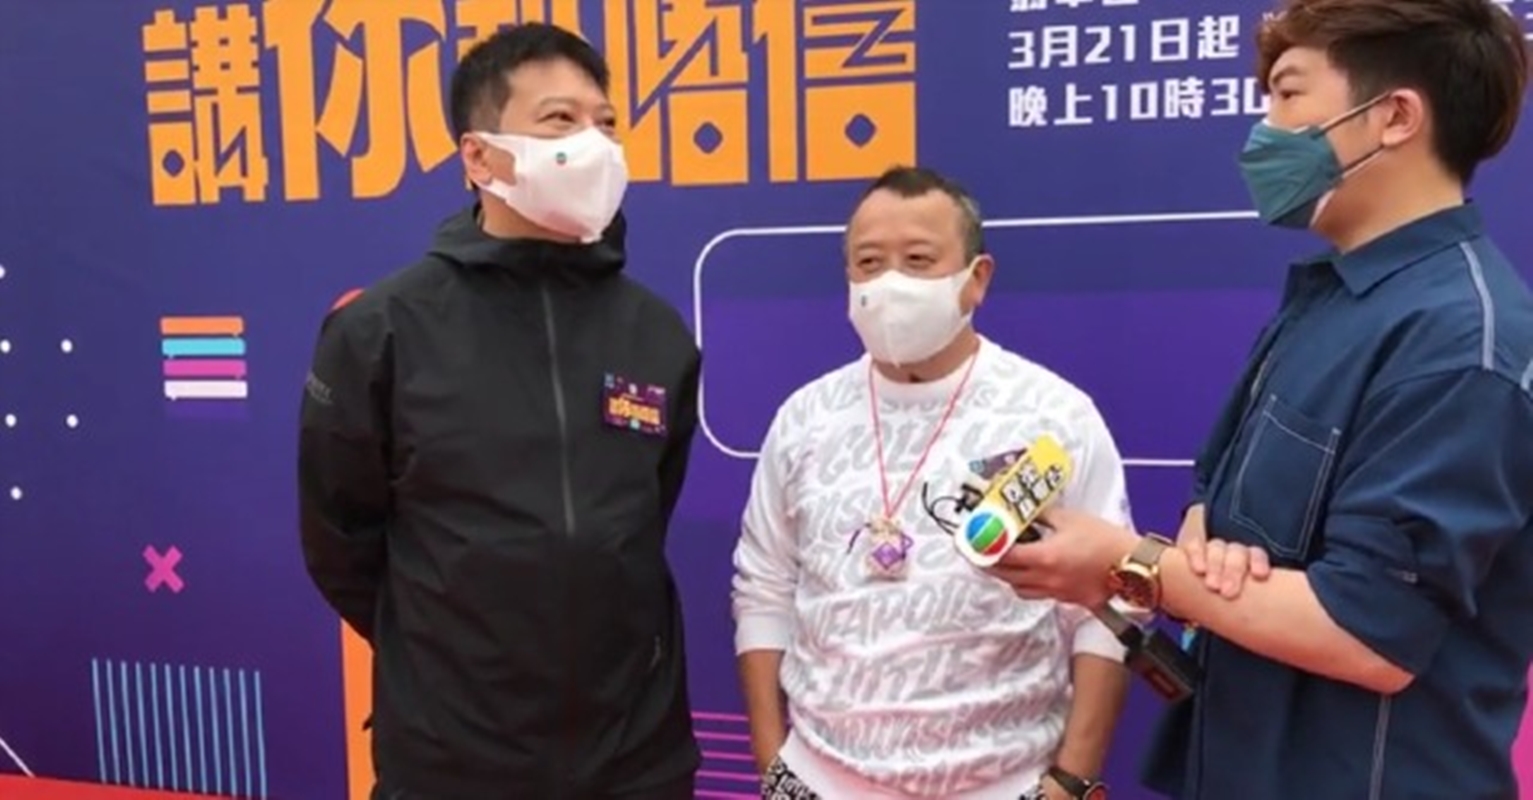 錢嘉樂在受訪時表示TVB的防疫規定非常嚴格